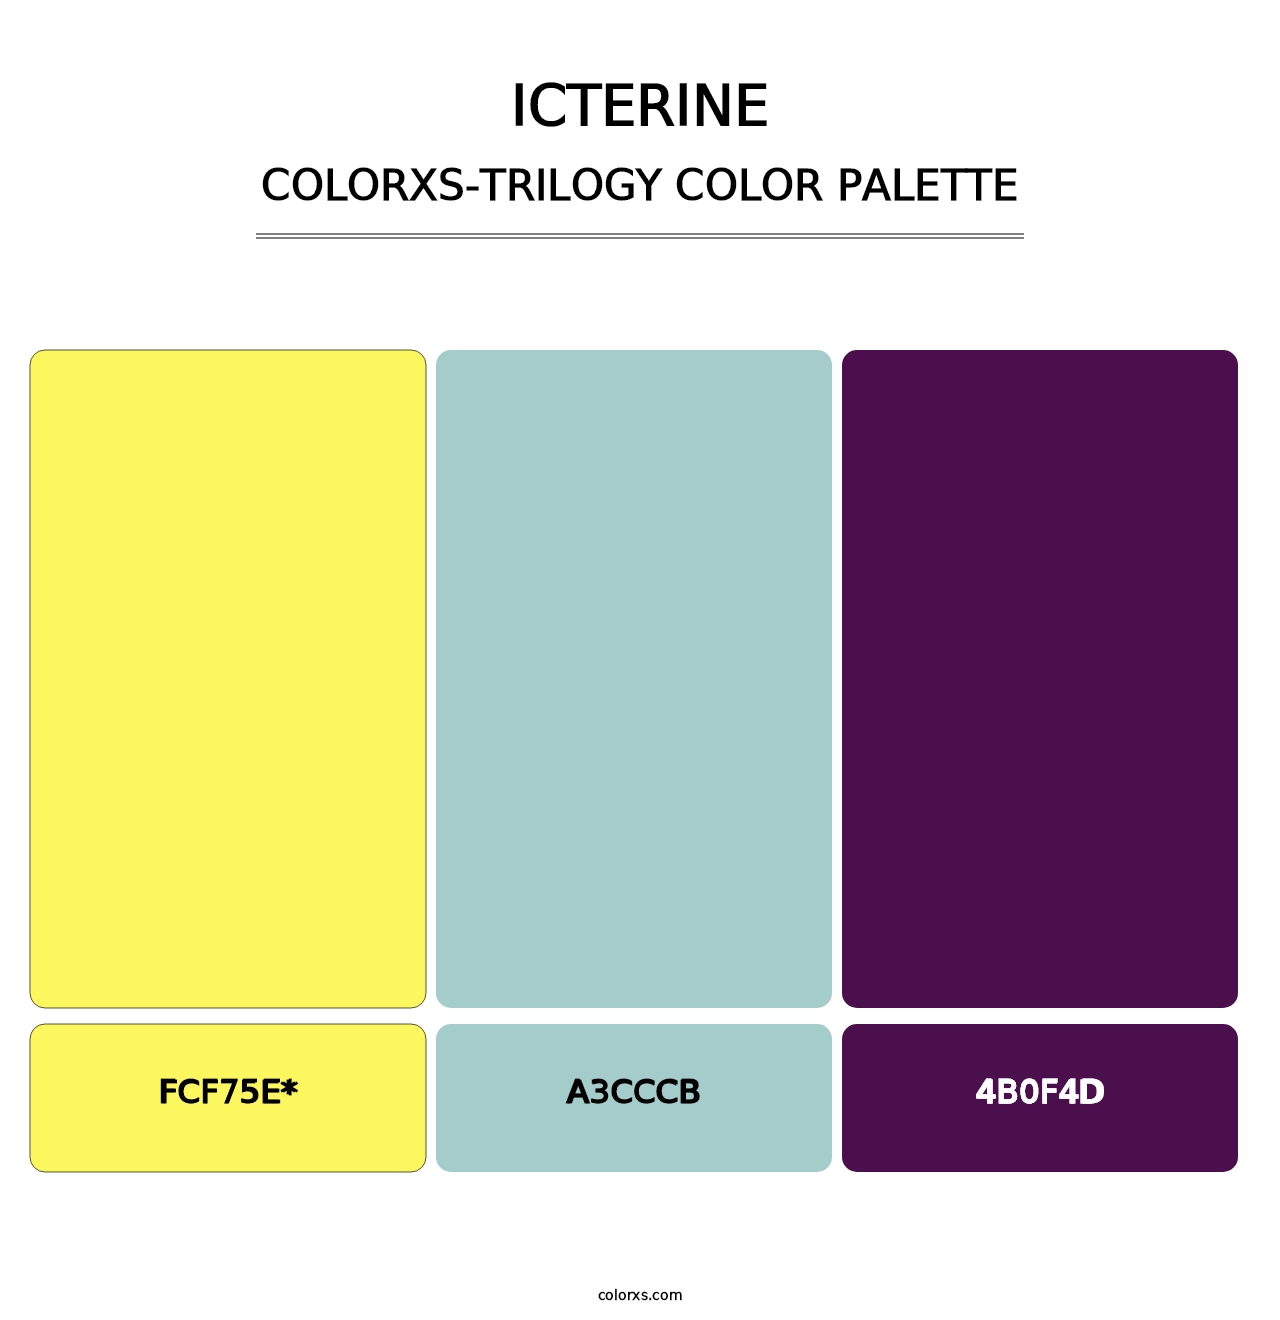 Icterine - Colorxs Trilogy Palette